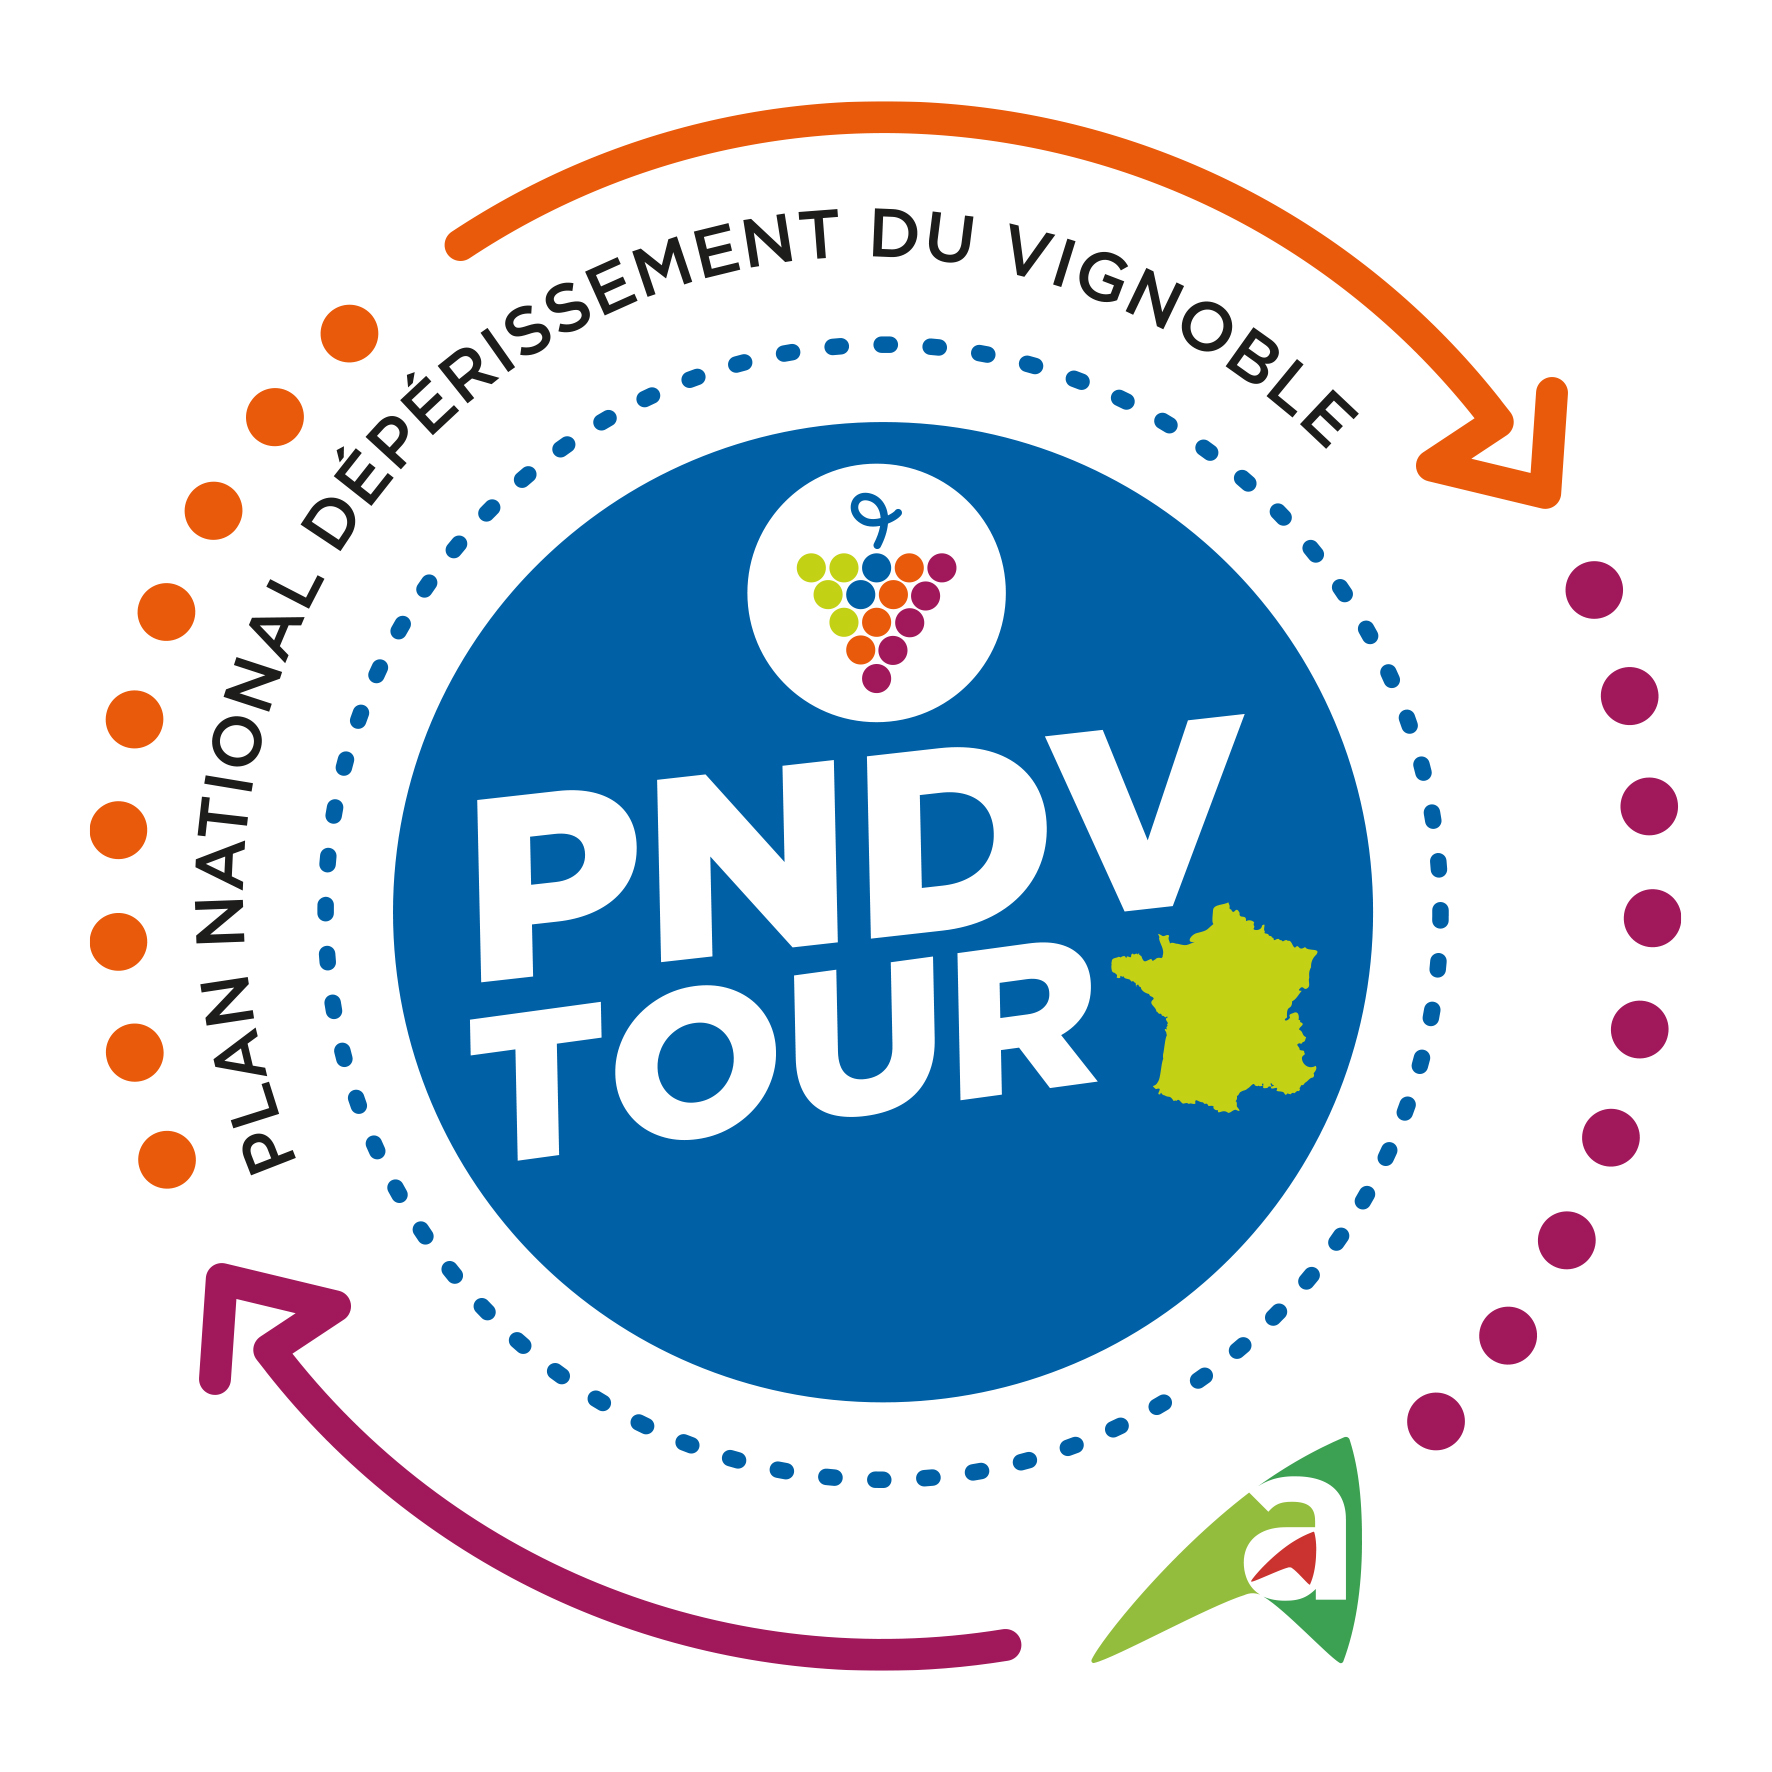 PNDV Tour en Indre-et-Loire !